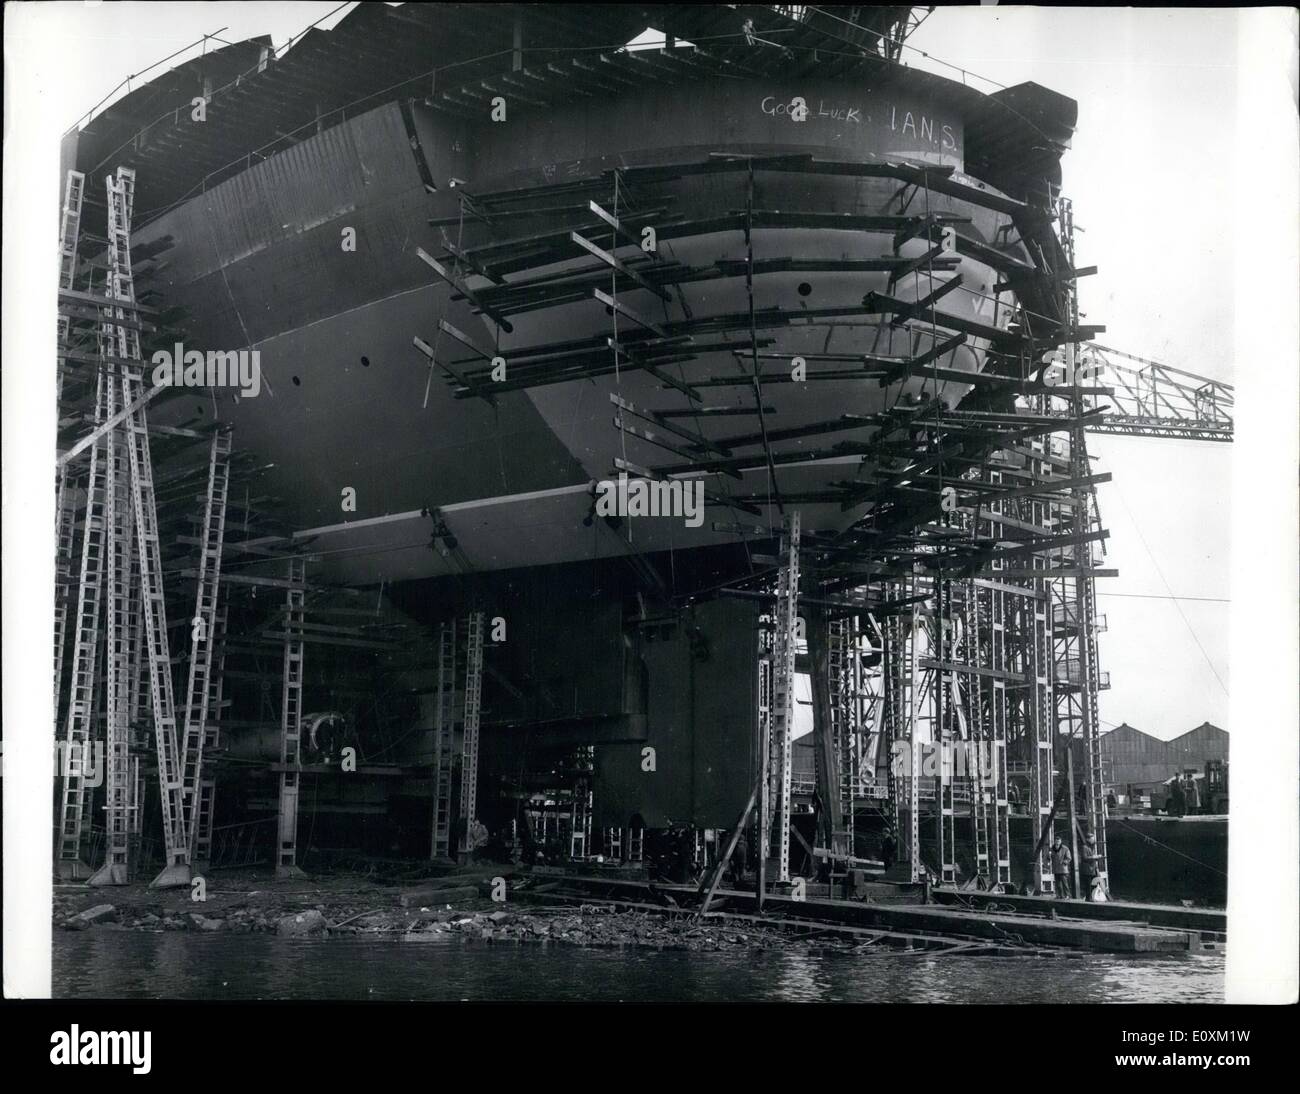 5. Mai 1967 erhält - q. 4 - Liner Ruder montiert; Der Knurrhahn Liner q. 4., bei John Brown Werft Clydebank gebaut wurde vor kurzem mit seinem Ruder 73-Ton ausgestattet. Von einer norwegischen Firma gemacht, ist es 26 ft hoch und 24 Fuß breit. Foto zeigt die Szene als die q. 4. ist mit seinem 73-Tonne-Ruder bei John Brown Werft Clydebank ausgestattet. Stockfoto